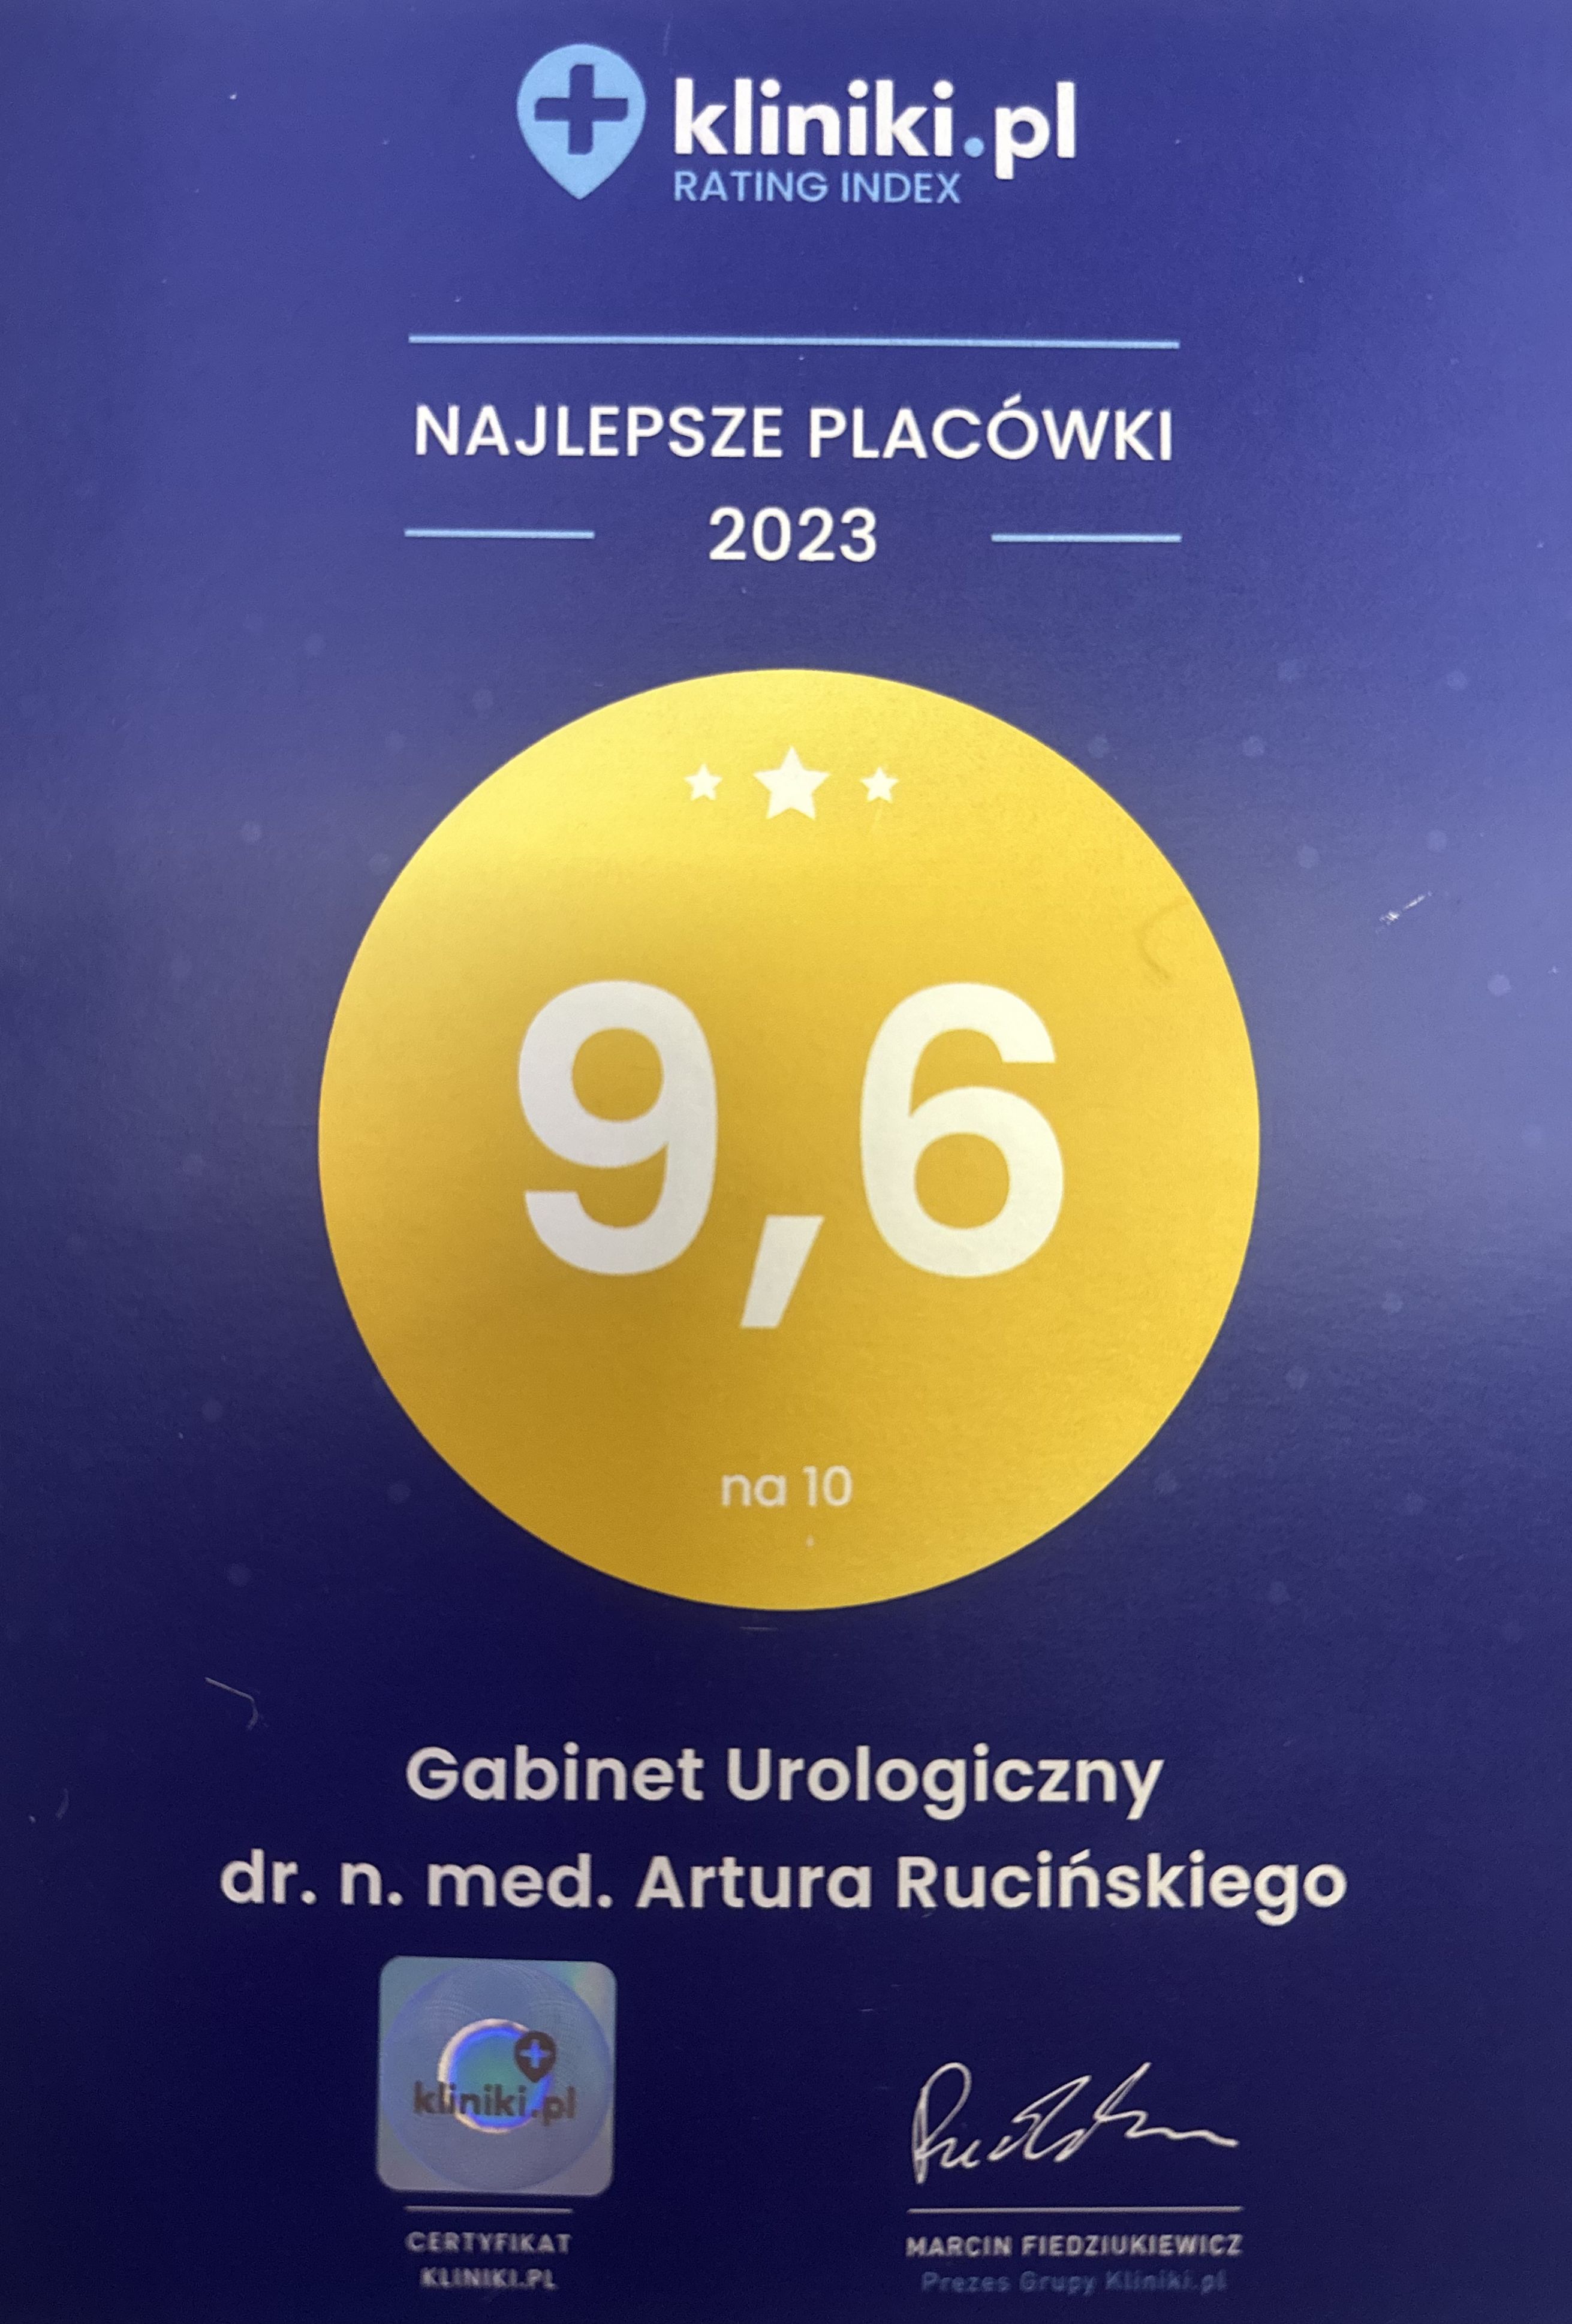 Ocena gabinetu urologicznego z portalu Kliniki.pl